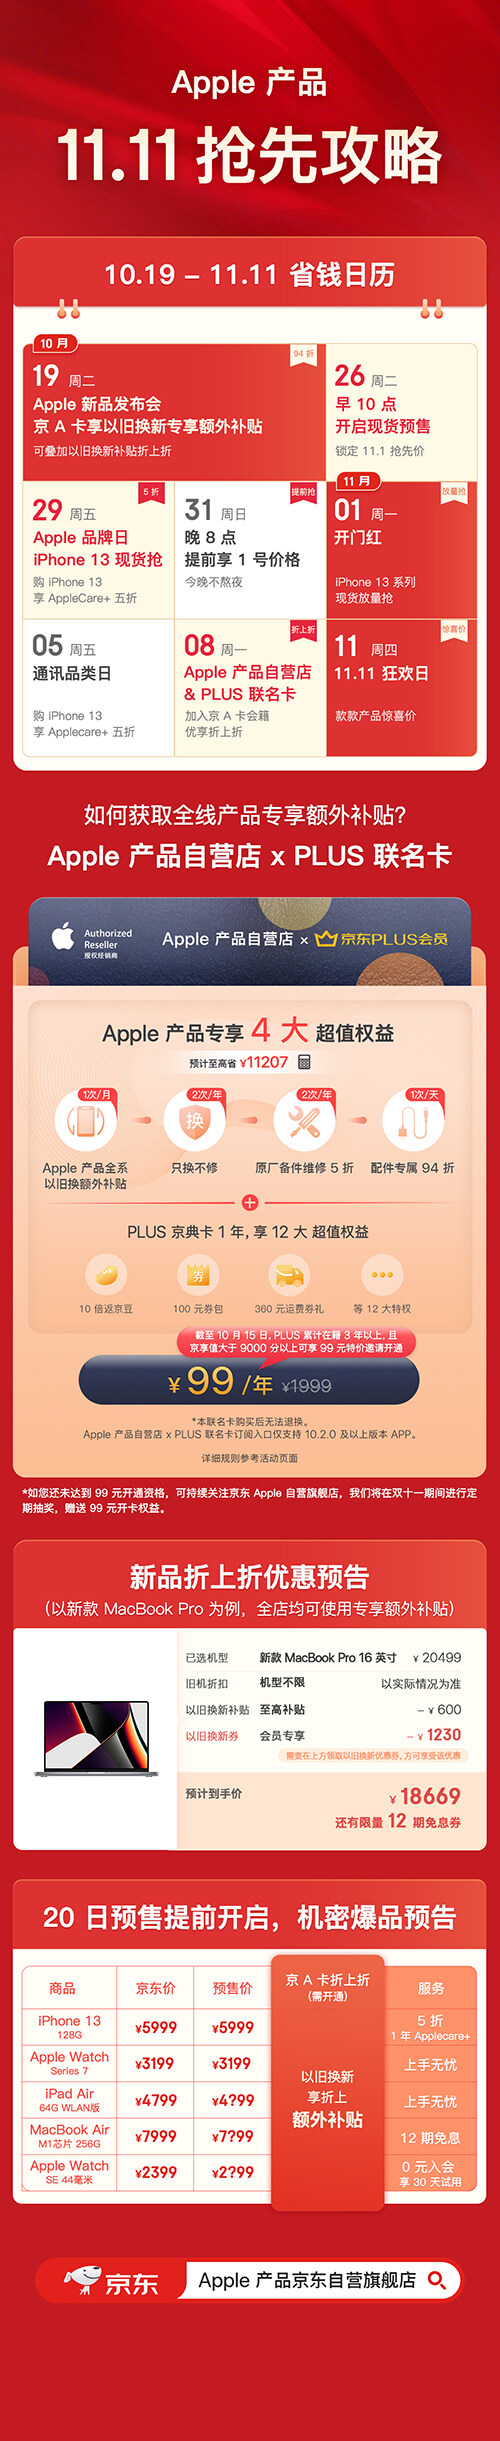 再度革新手机服务 京东Apple自营店 x PLUS联名卡10月19日上线